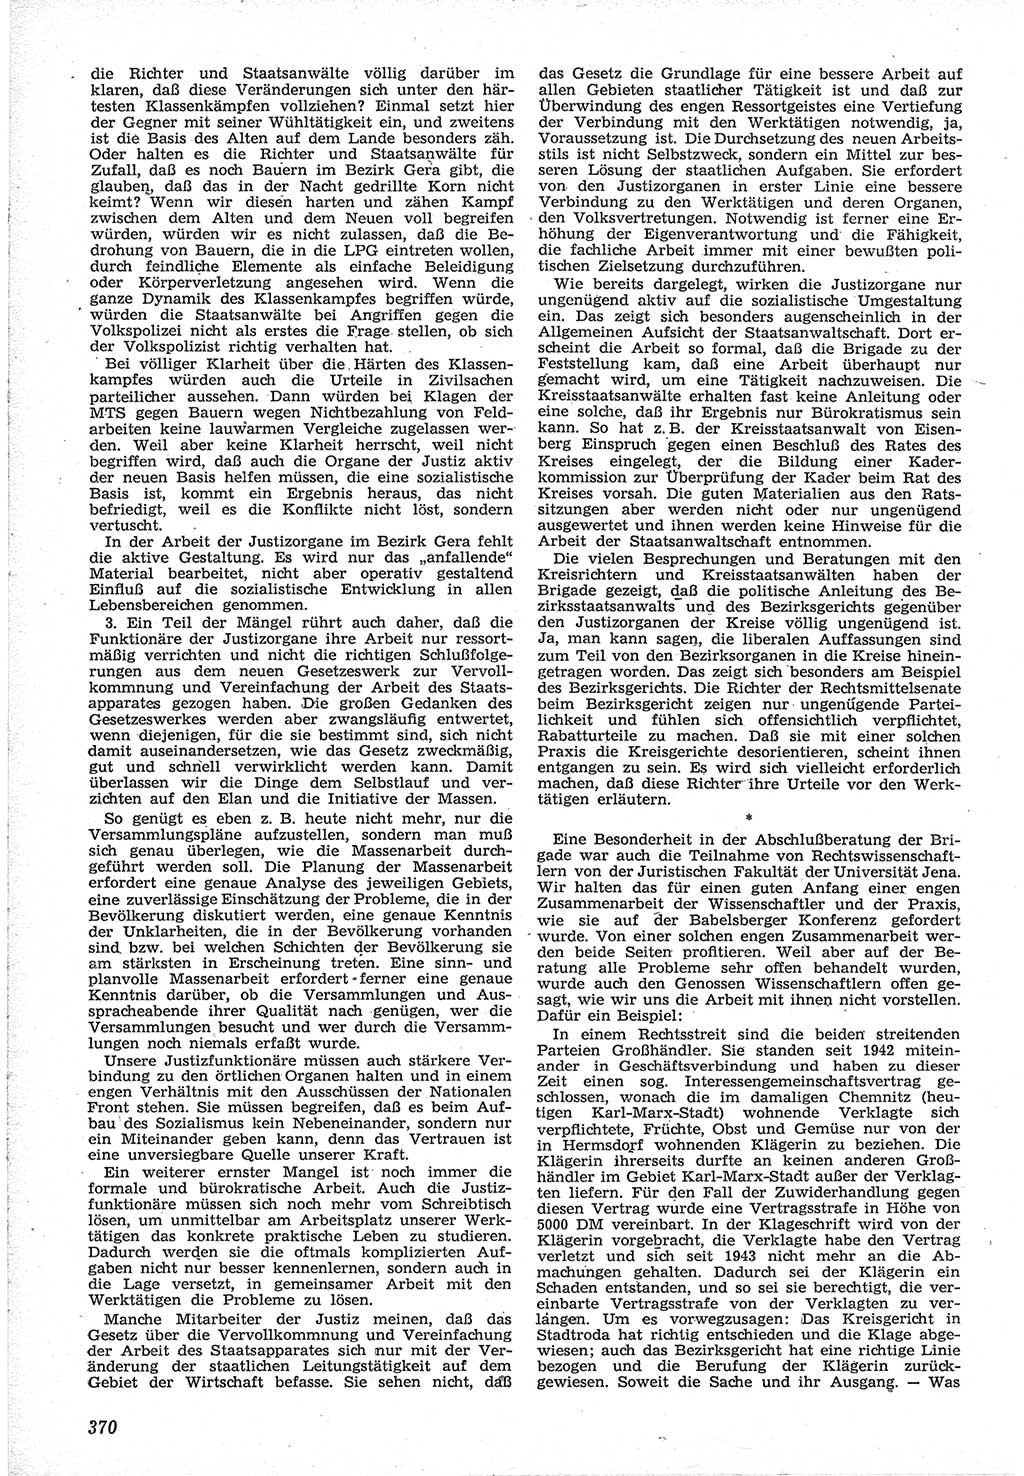 Neue Justiz (NJ), Zeitschrift für Recht und Rechtswissenschaft [Deutsche Demokratische Republik (DDR)], 12. Jahrgang 1958, Seite 370 (NJ DDR 1958, S. 370)